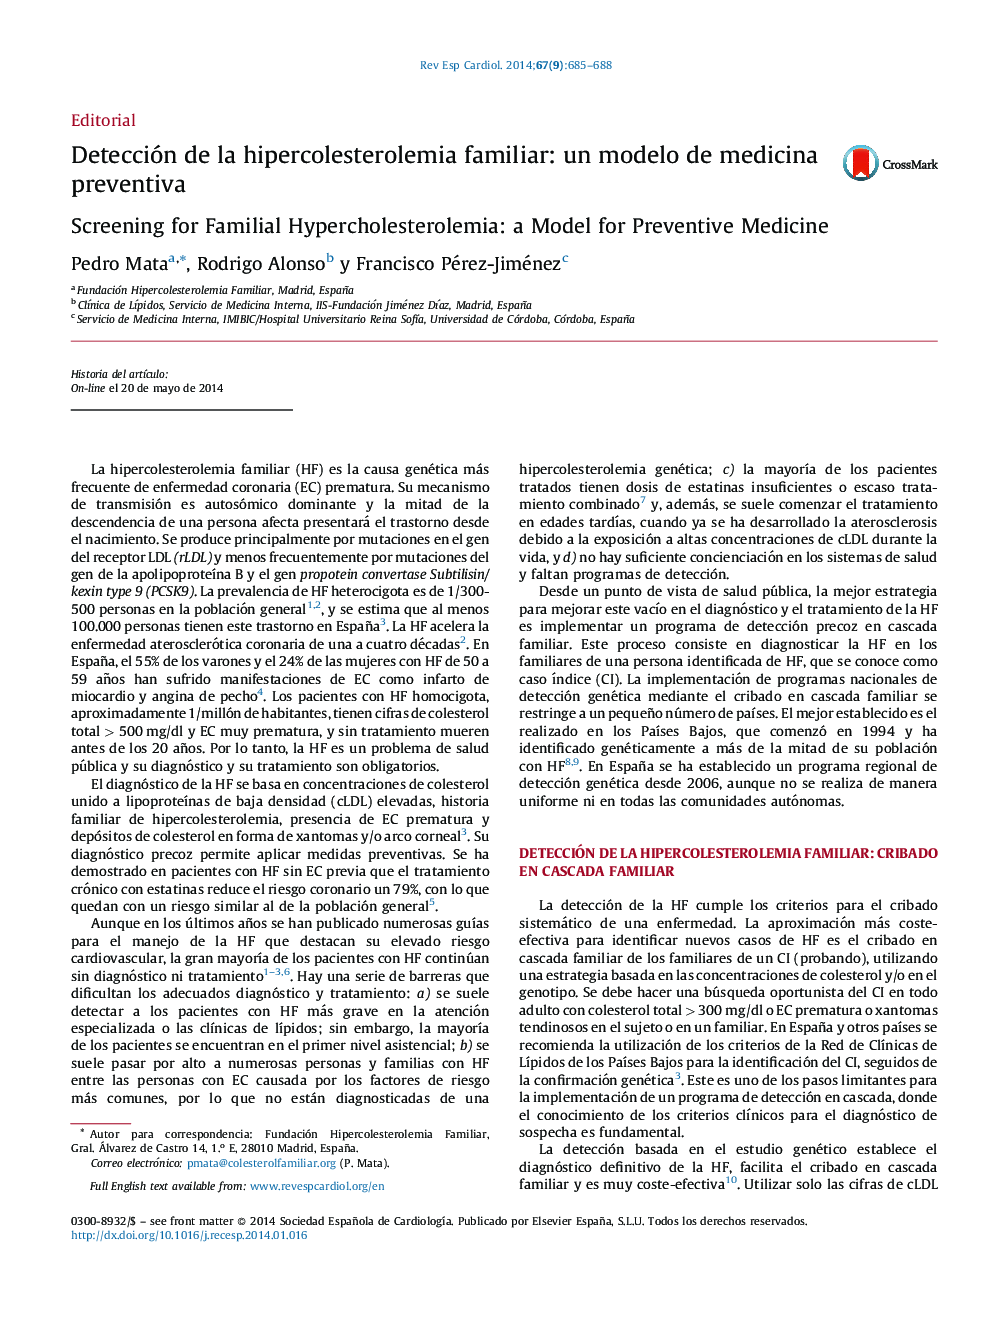 تشخیص هیپرکلسترولمی خانوادگی: یک مدل پیشگیری از طب سوزنی 